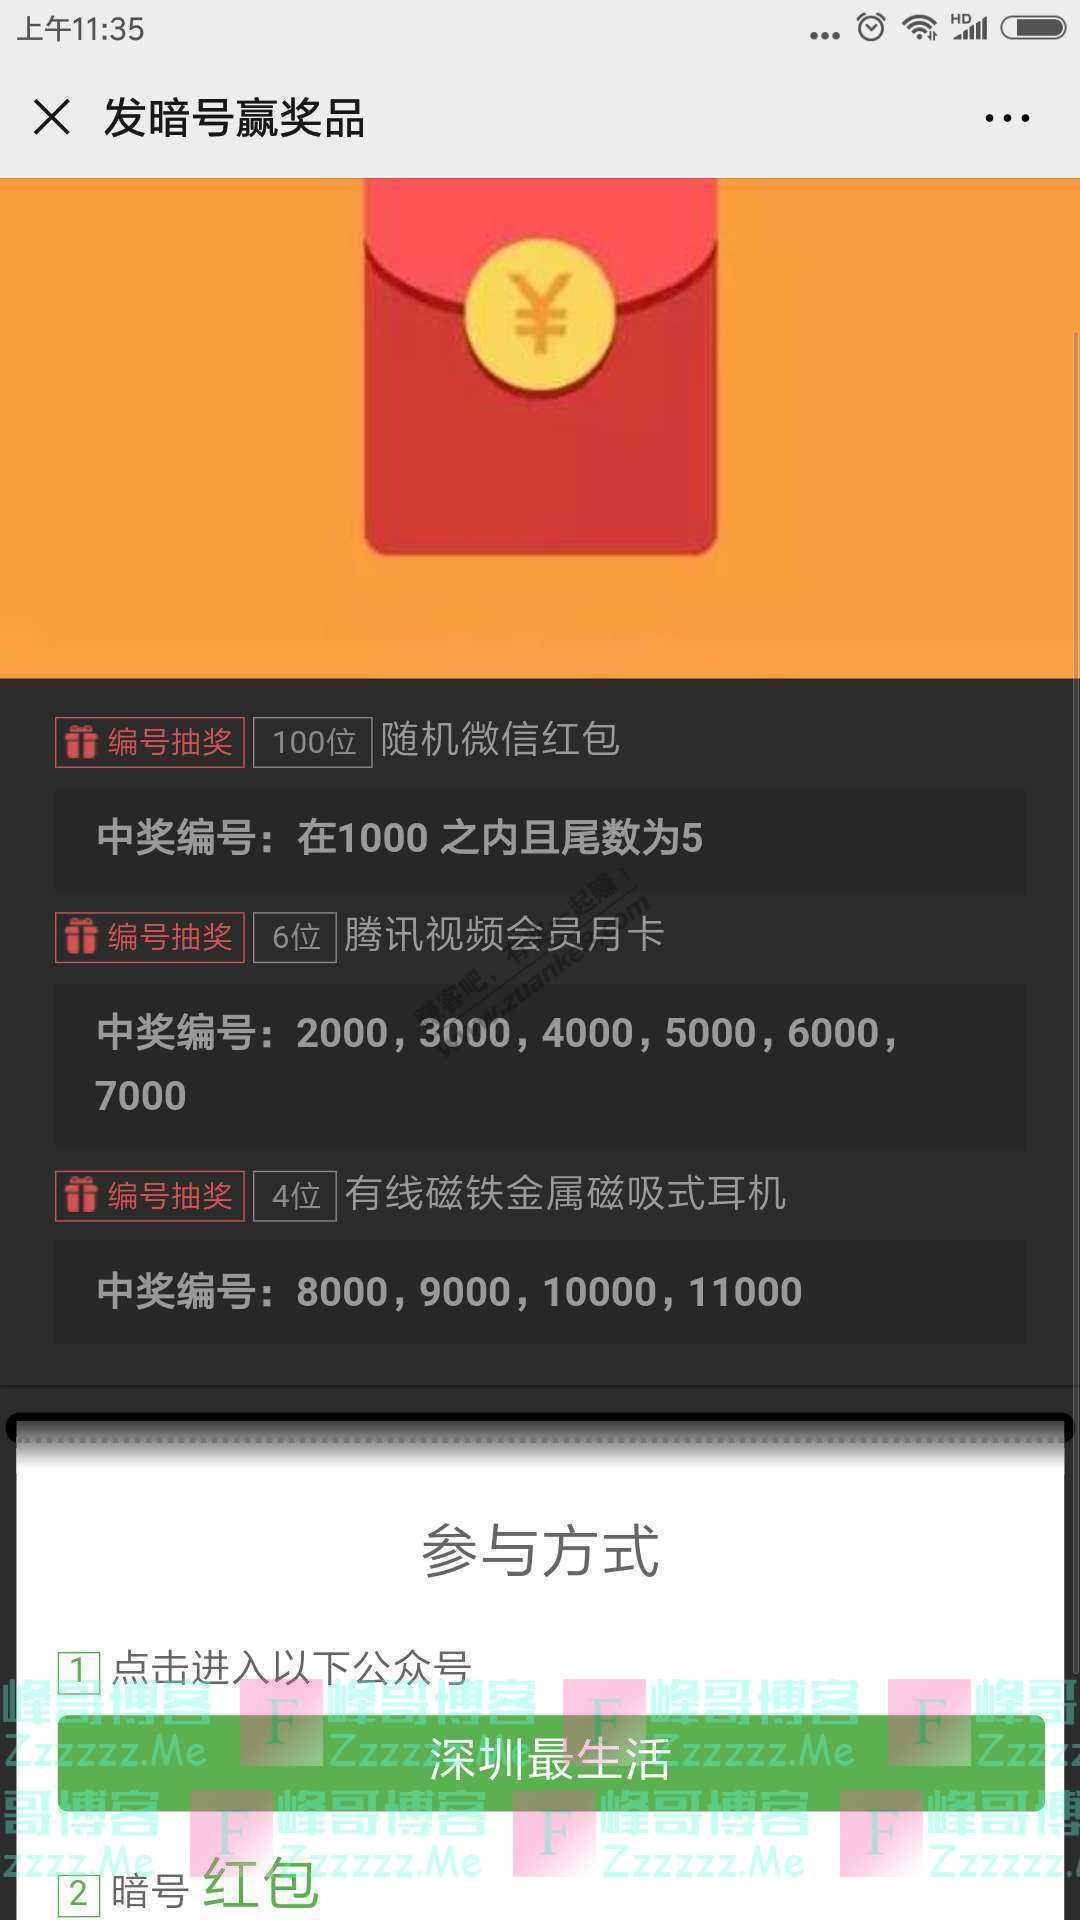 深圳最生活宜家500元礼品卡免费送（截止10月25日）